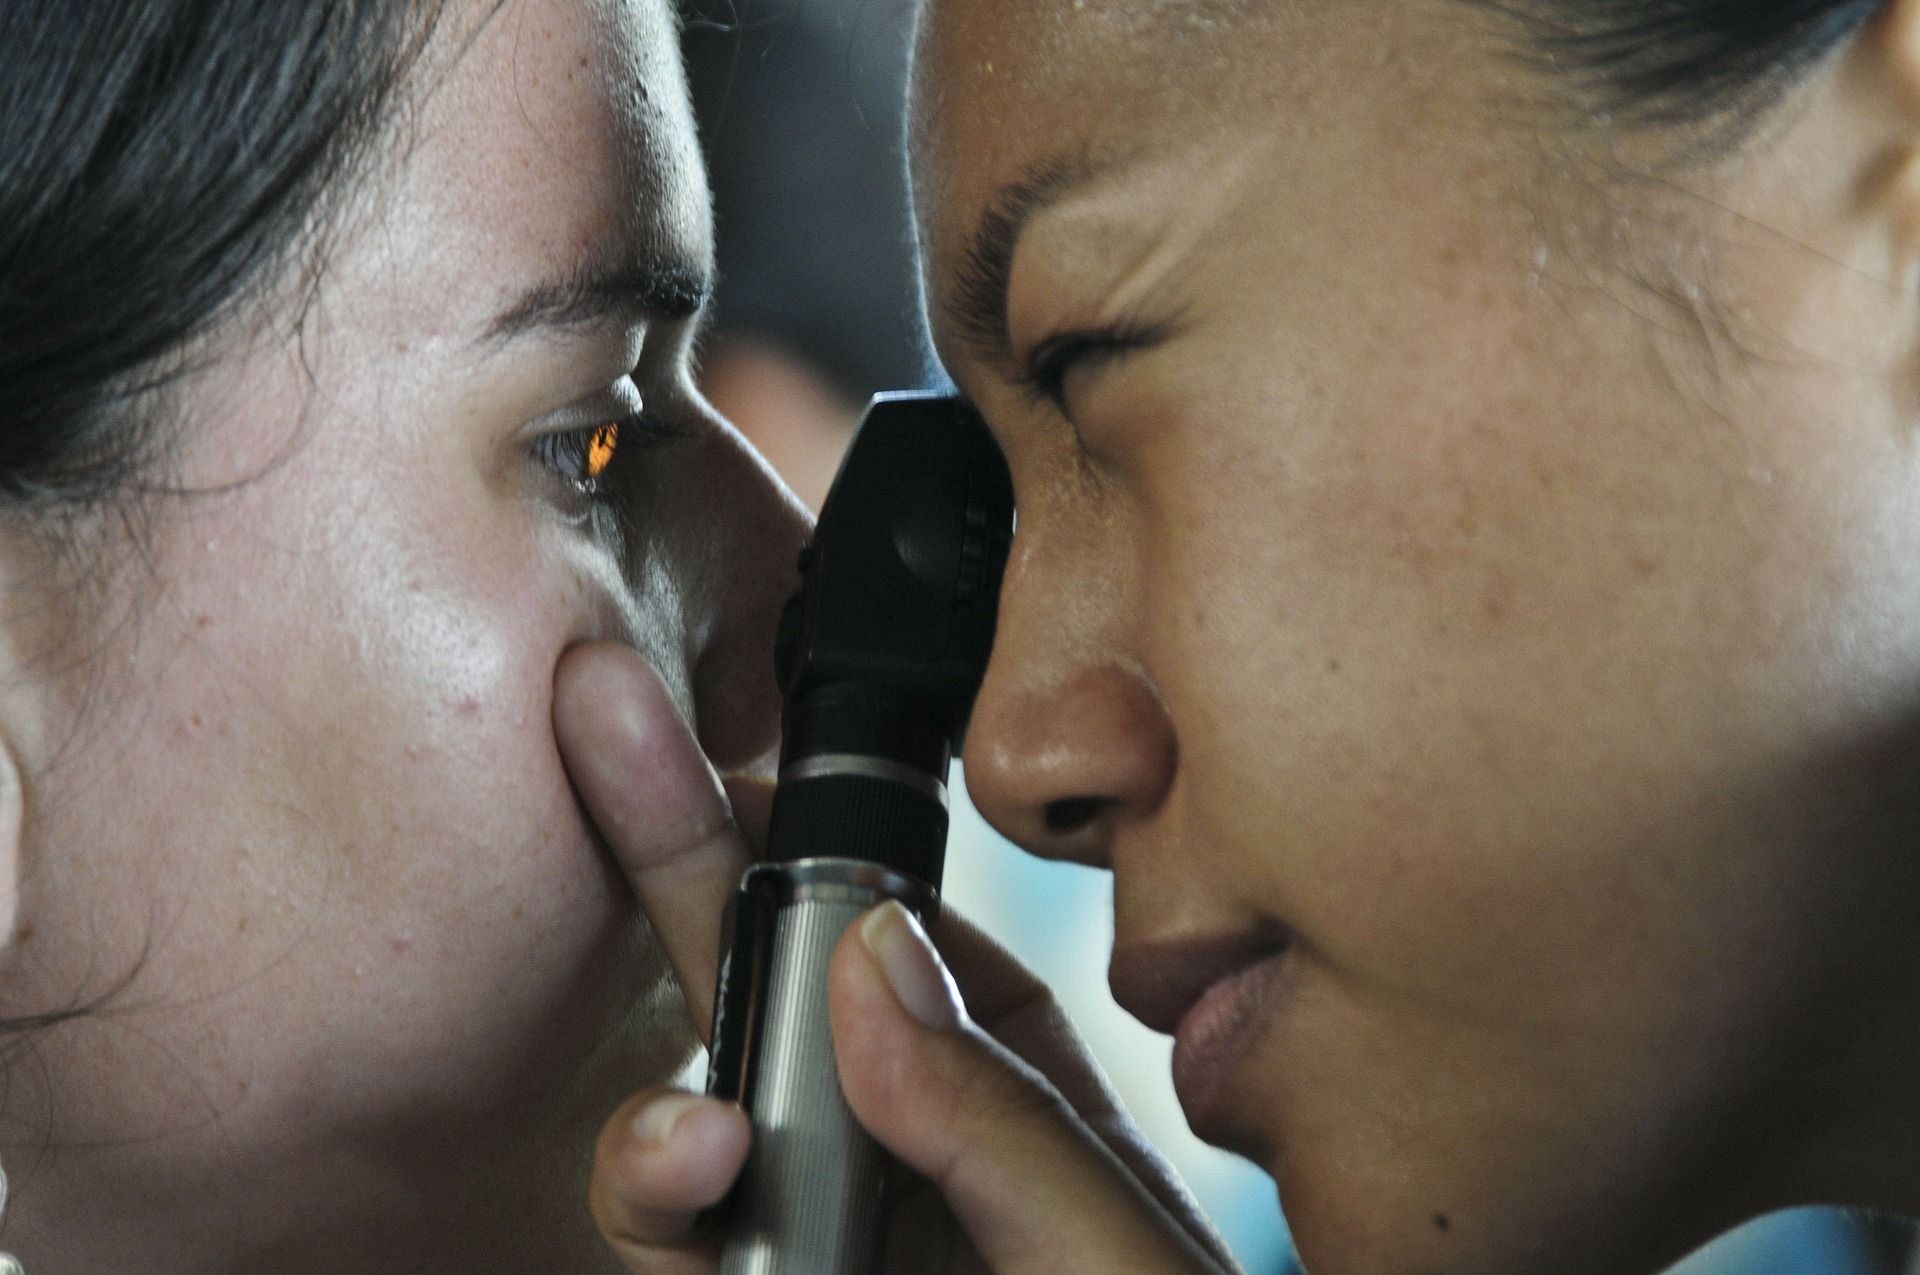 דירוג מרפאות העיניים הטובות ביותר באופה בשנת 2020